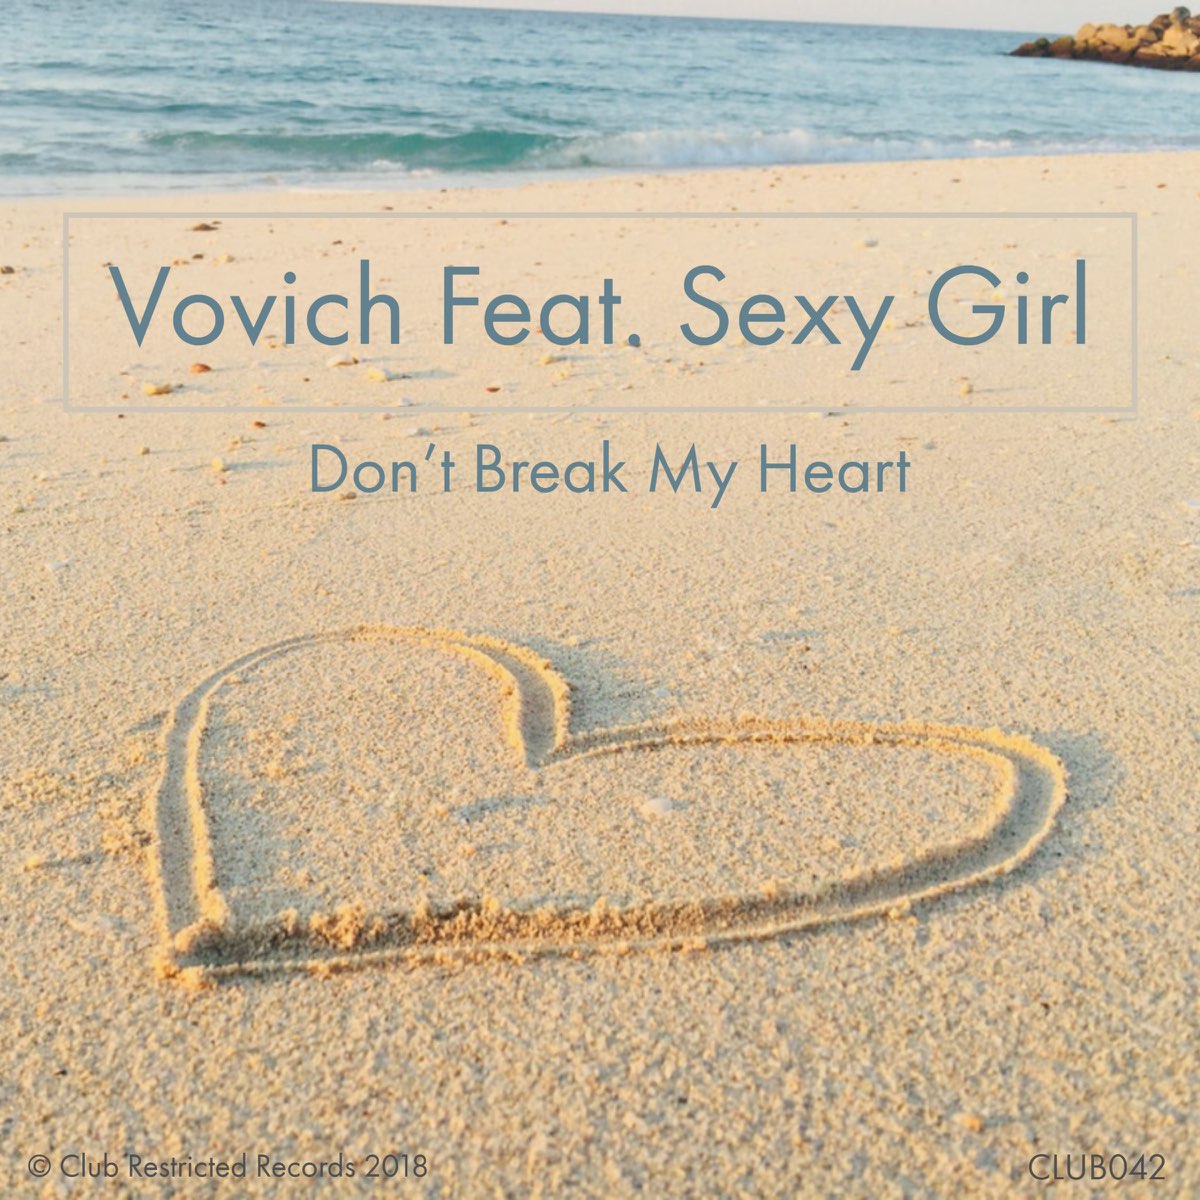 Don't Break Heart. Break my Heart. Don't Break my Heart (Original Mix). Solitario don t Break my Heart 2019. Dont broke